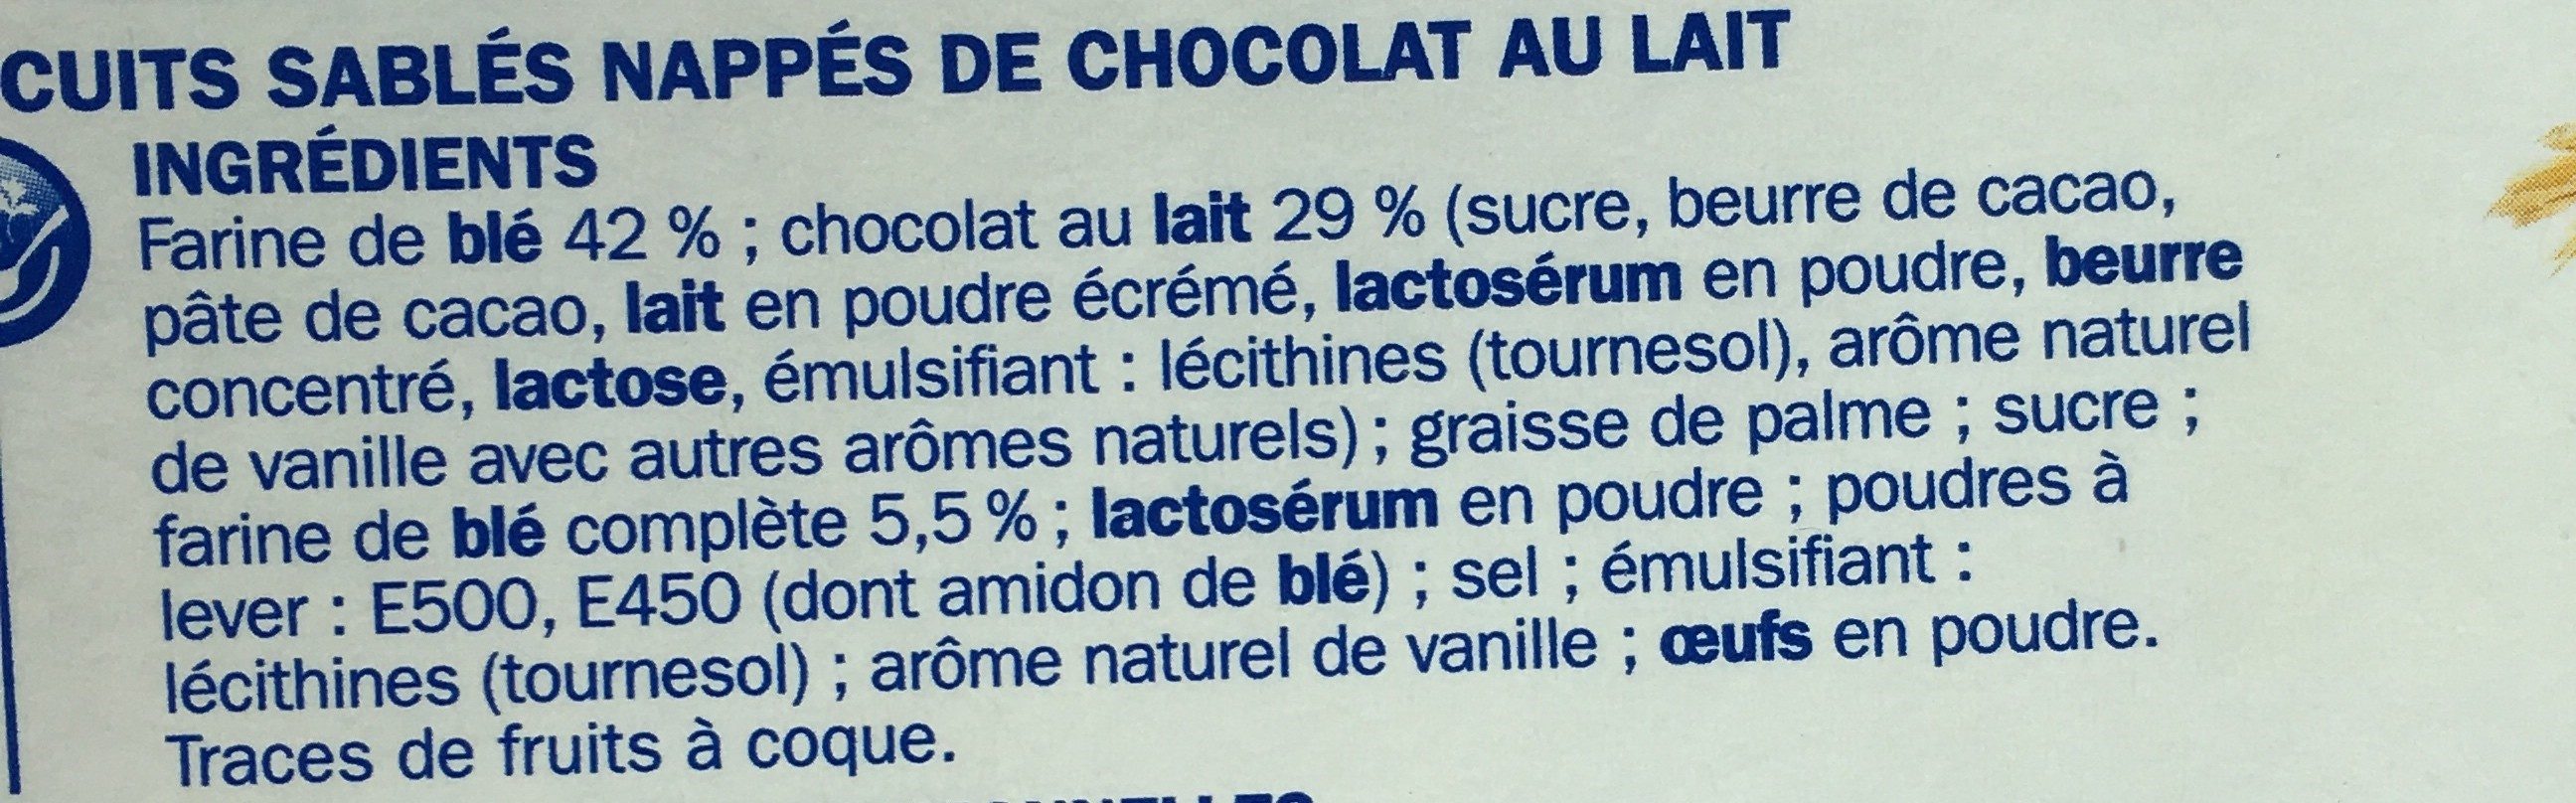 Sablé céréales P'tit Déli Chocolat au lait pocket - Ingredients - fr